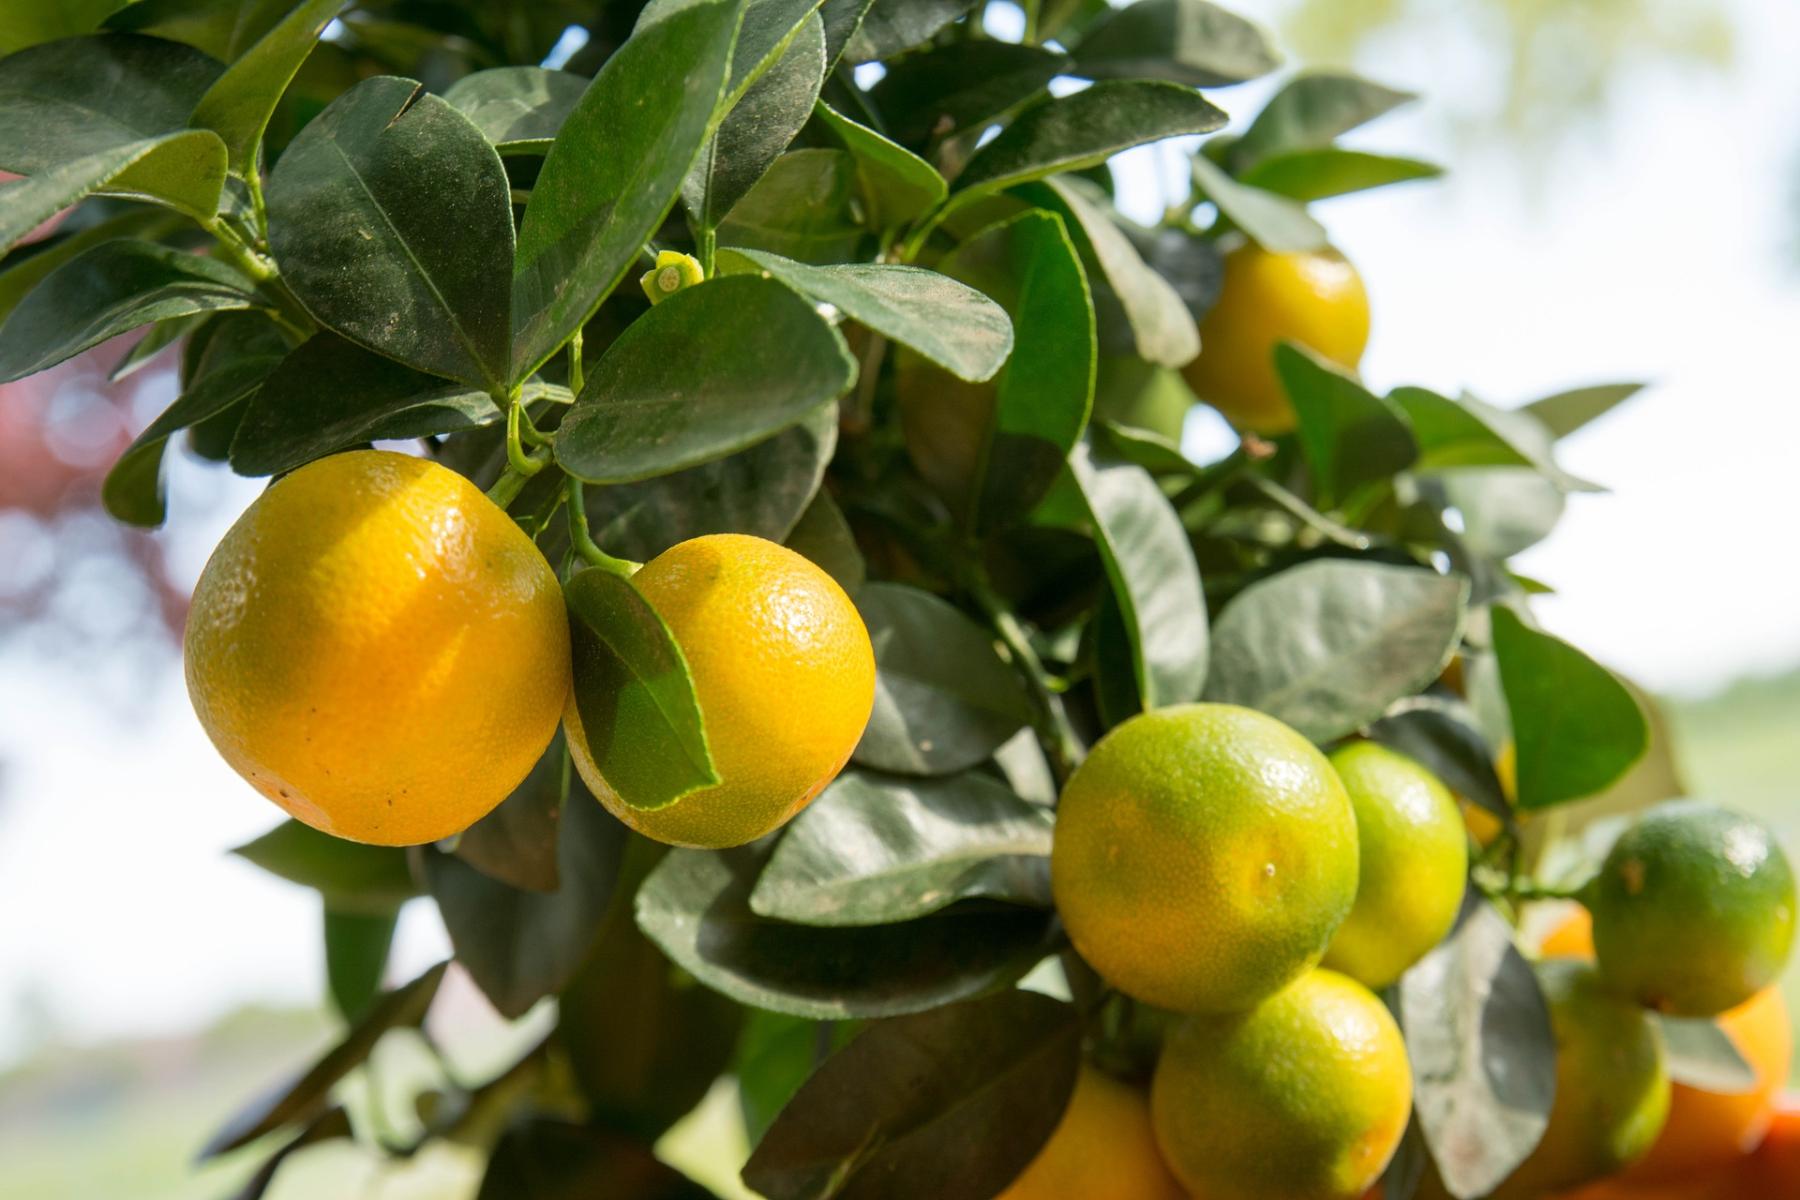 Image of 'Calamondin' orange fruits.